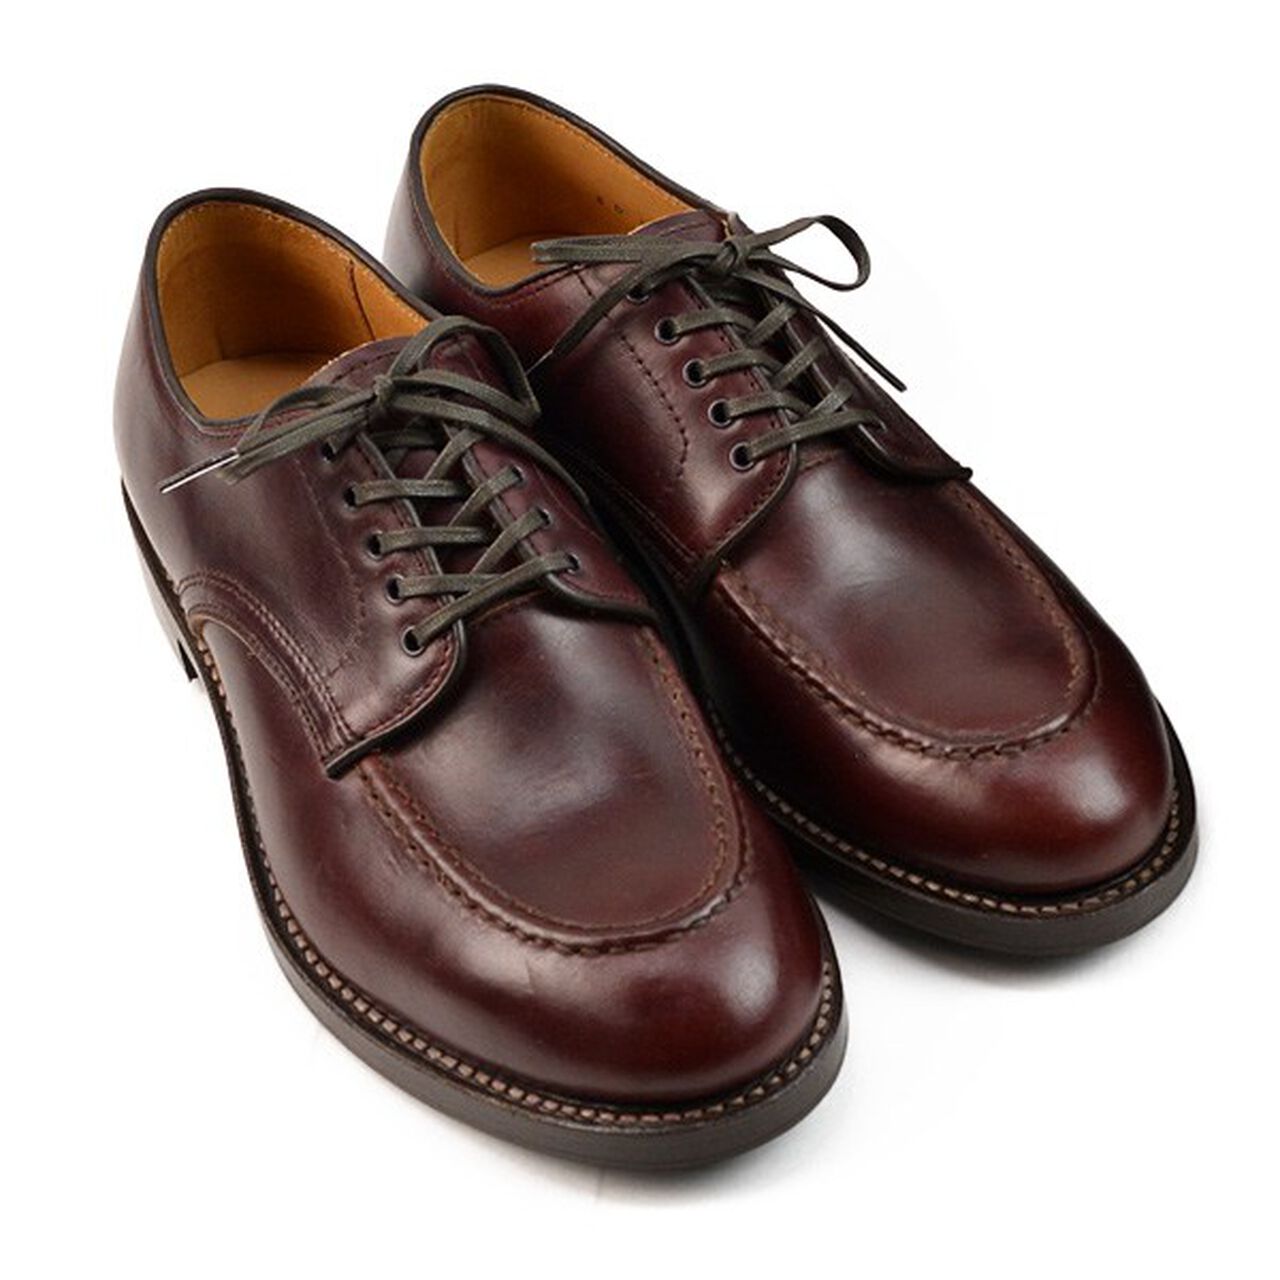 15078 Heavy Stitching Moc Toe Leather Shoes,Burgundy, large image number 0